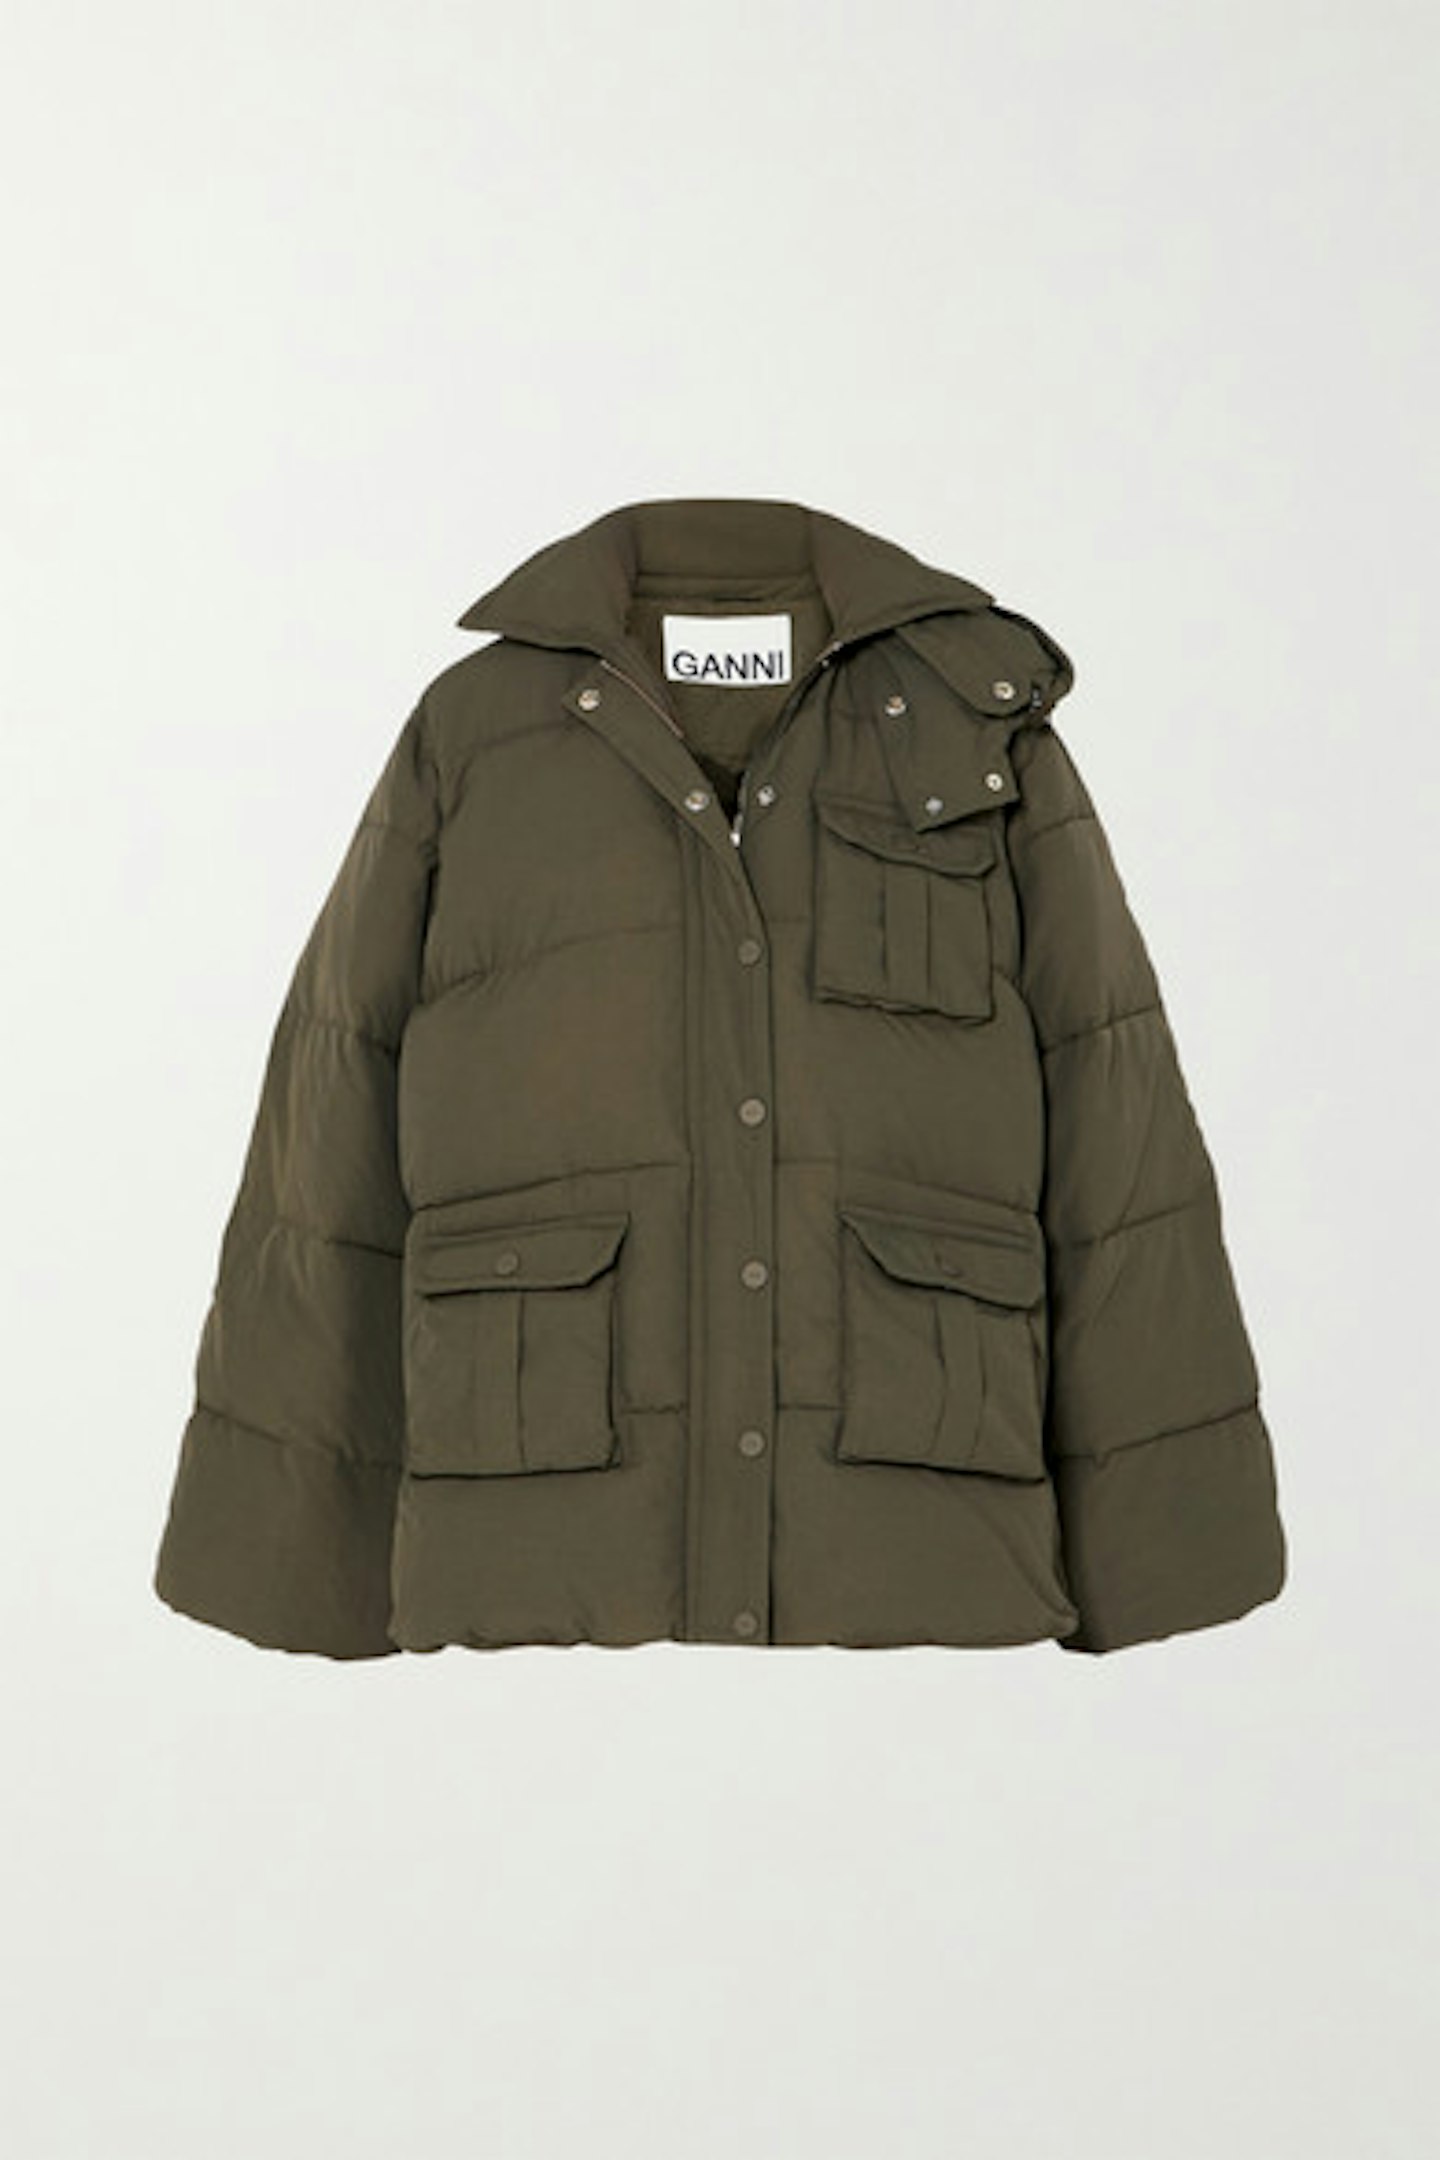 Ganni, Oversized Hooded Jacket, £350